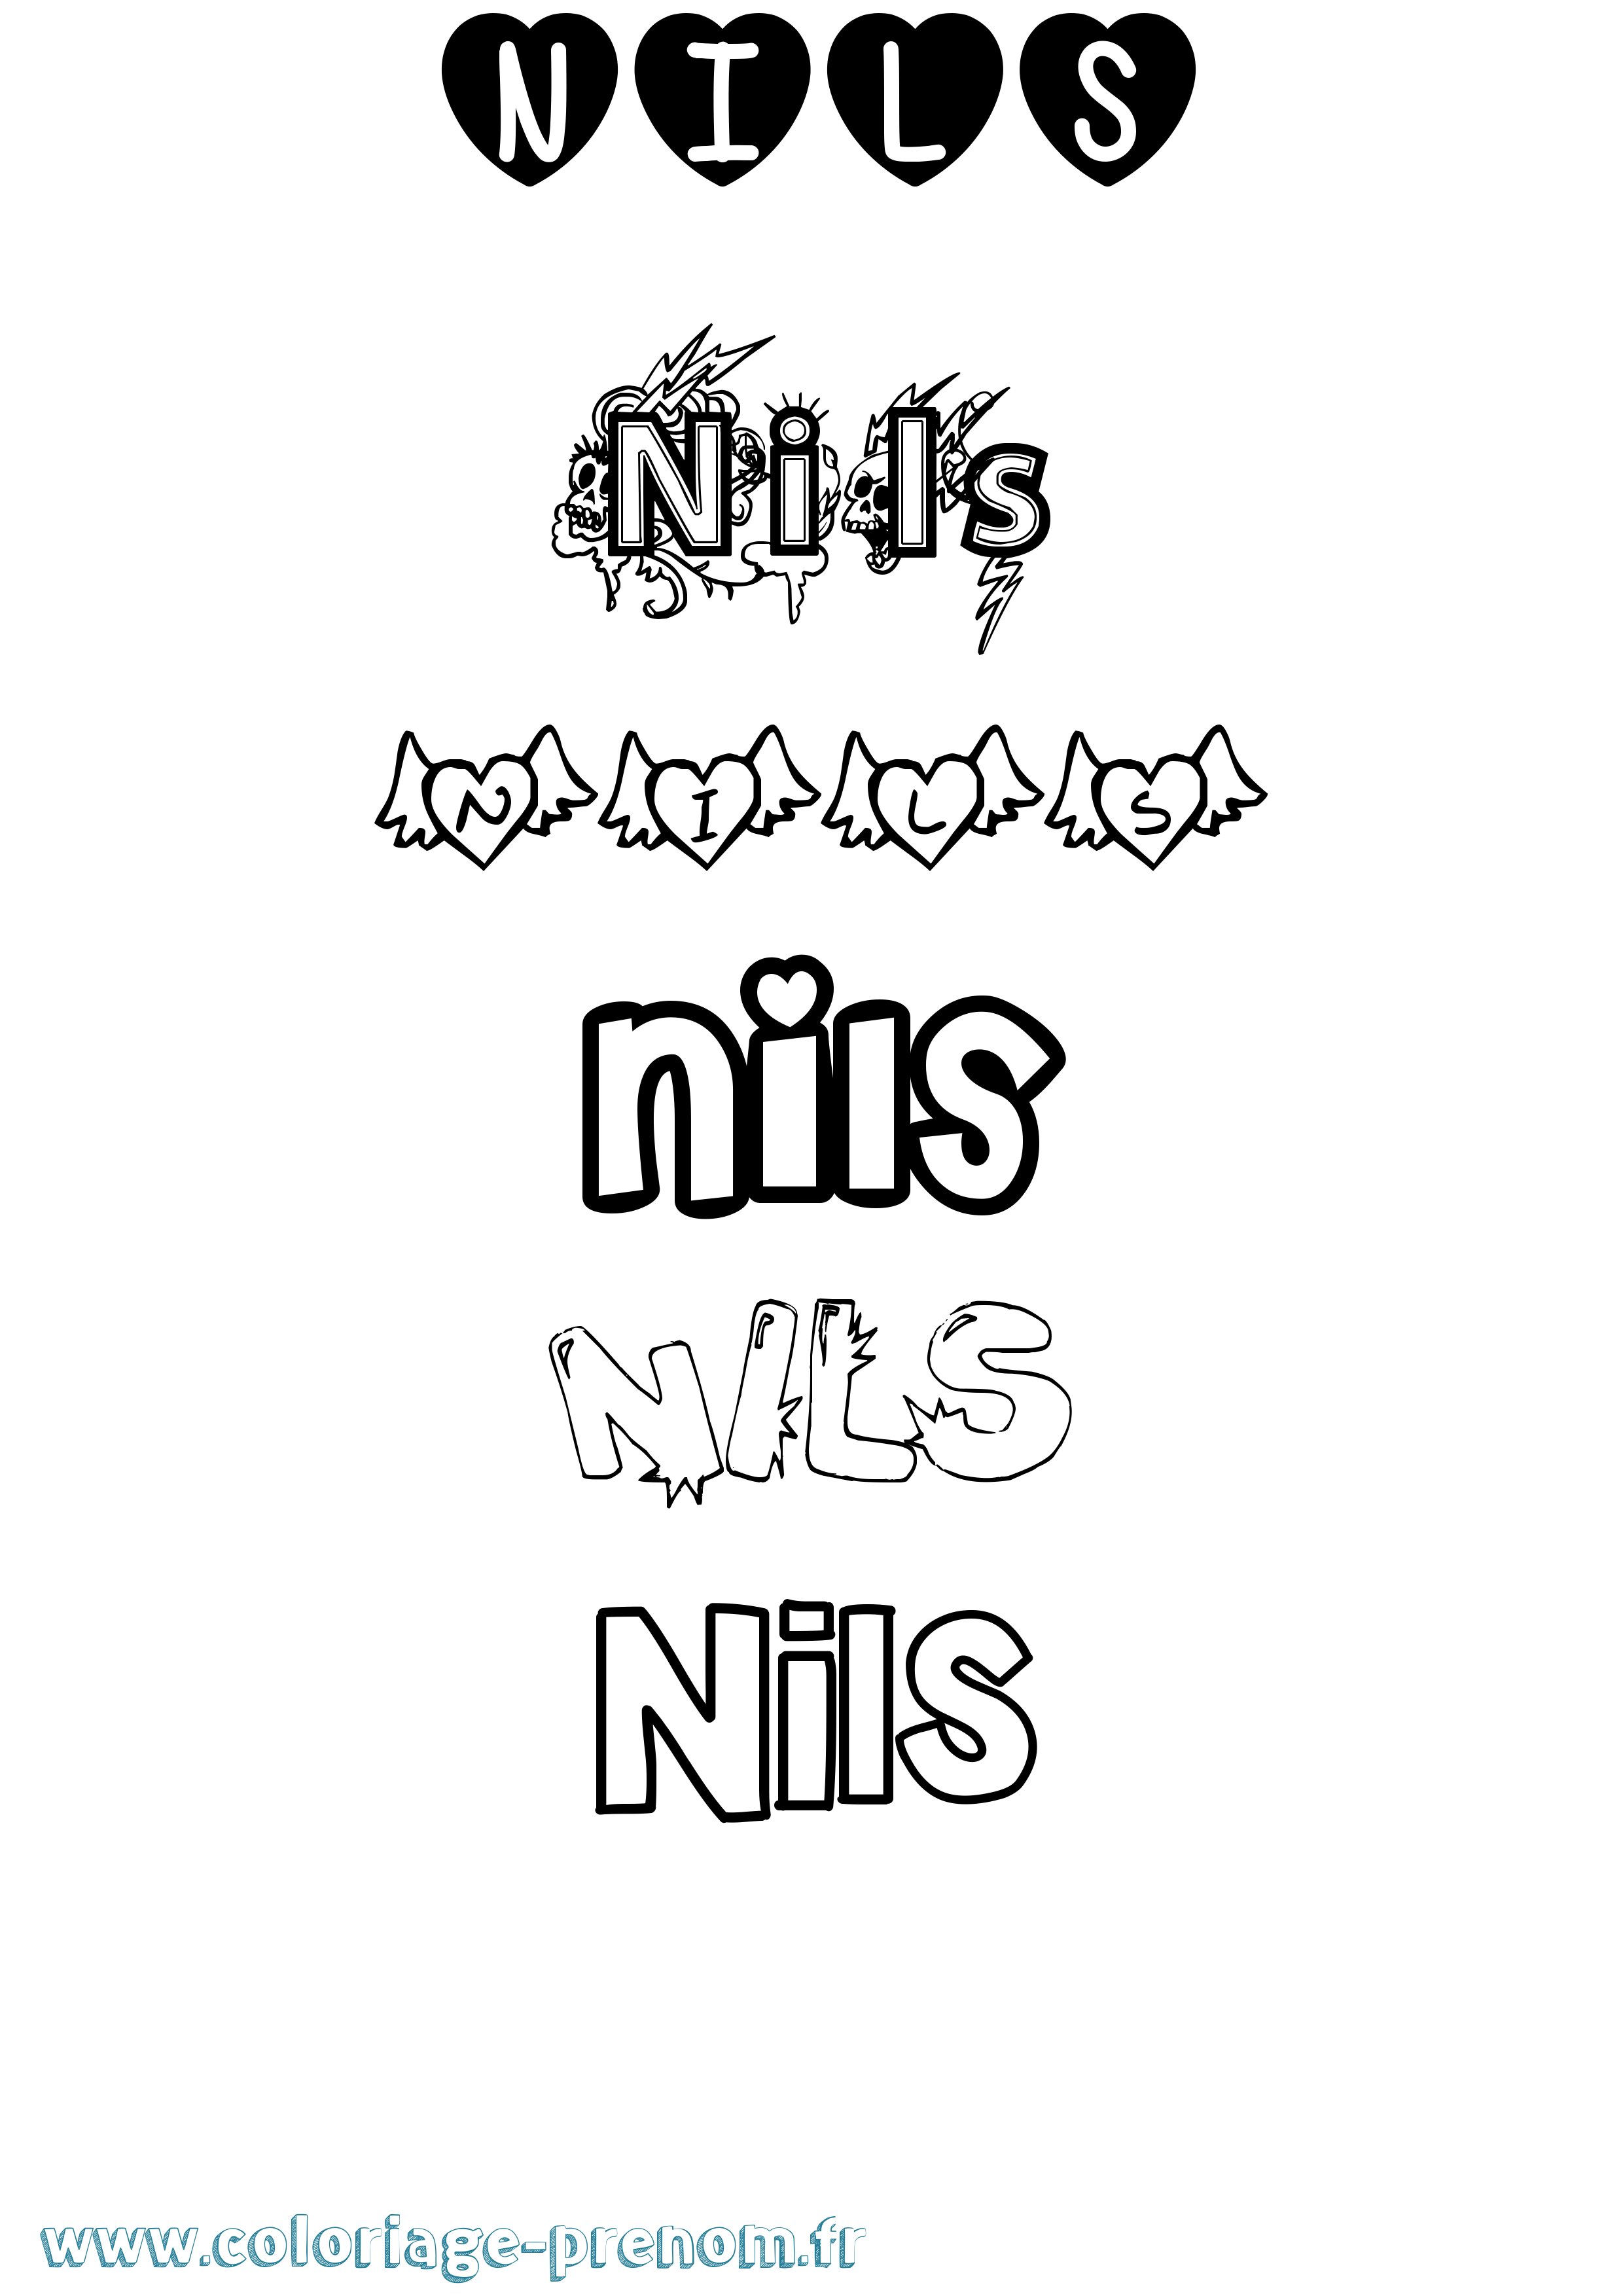 Coloriage prénom Nils